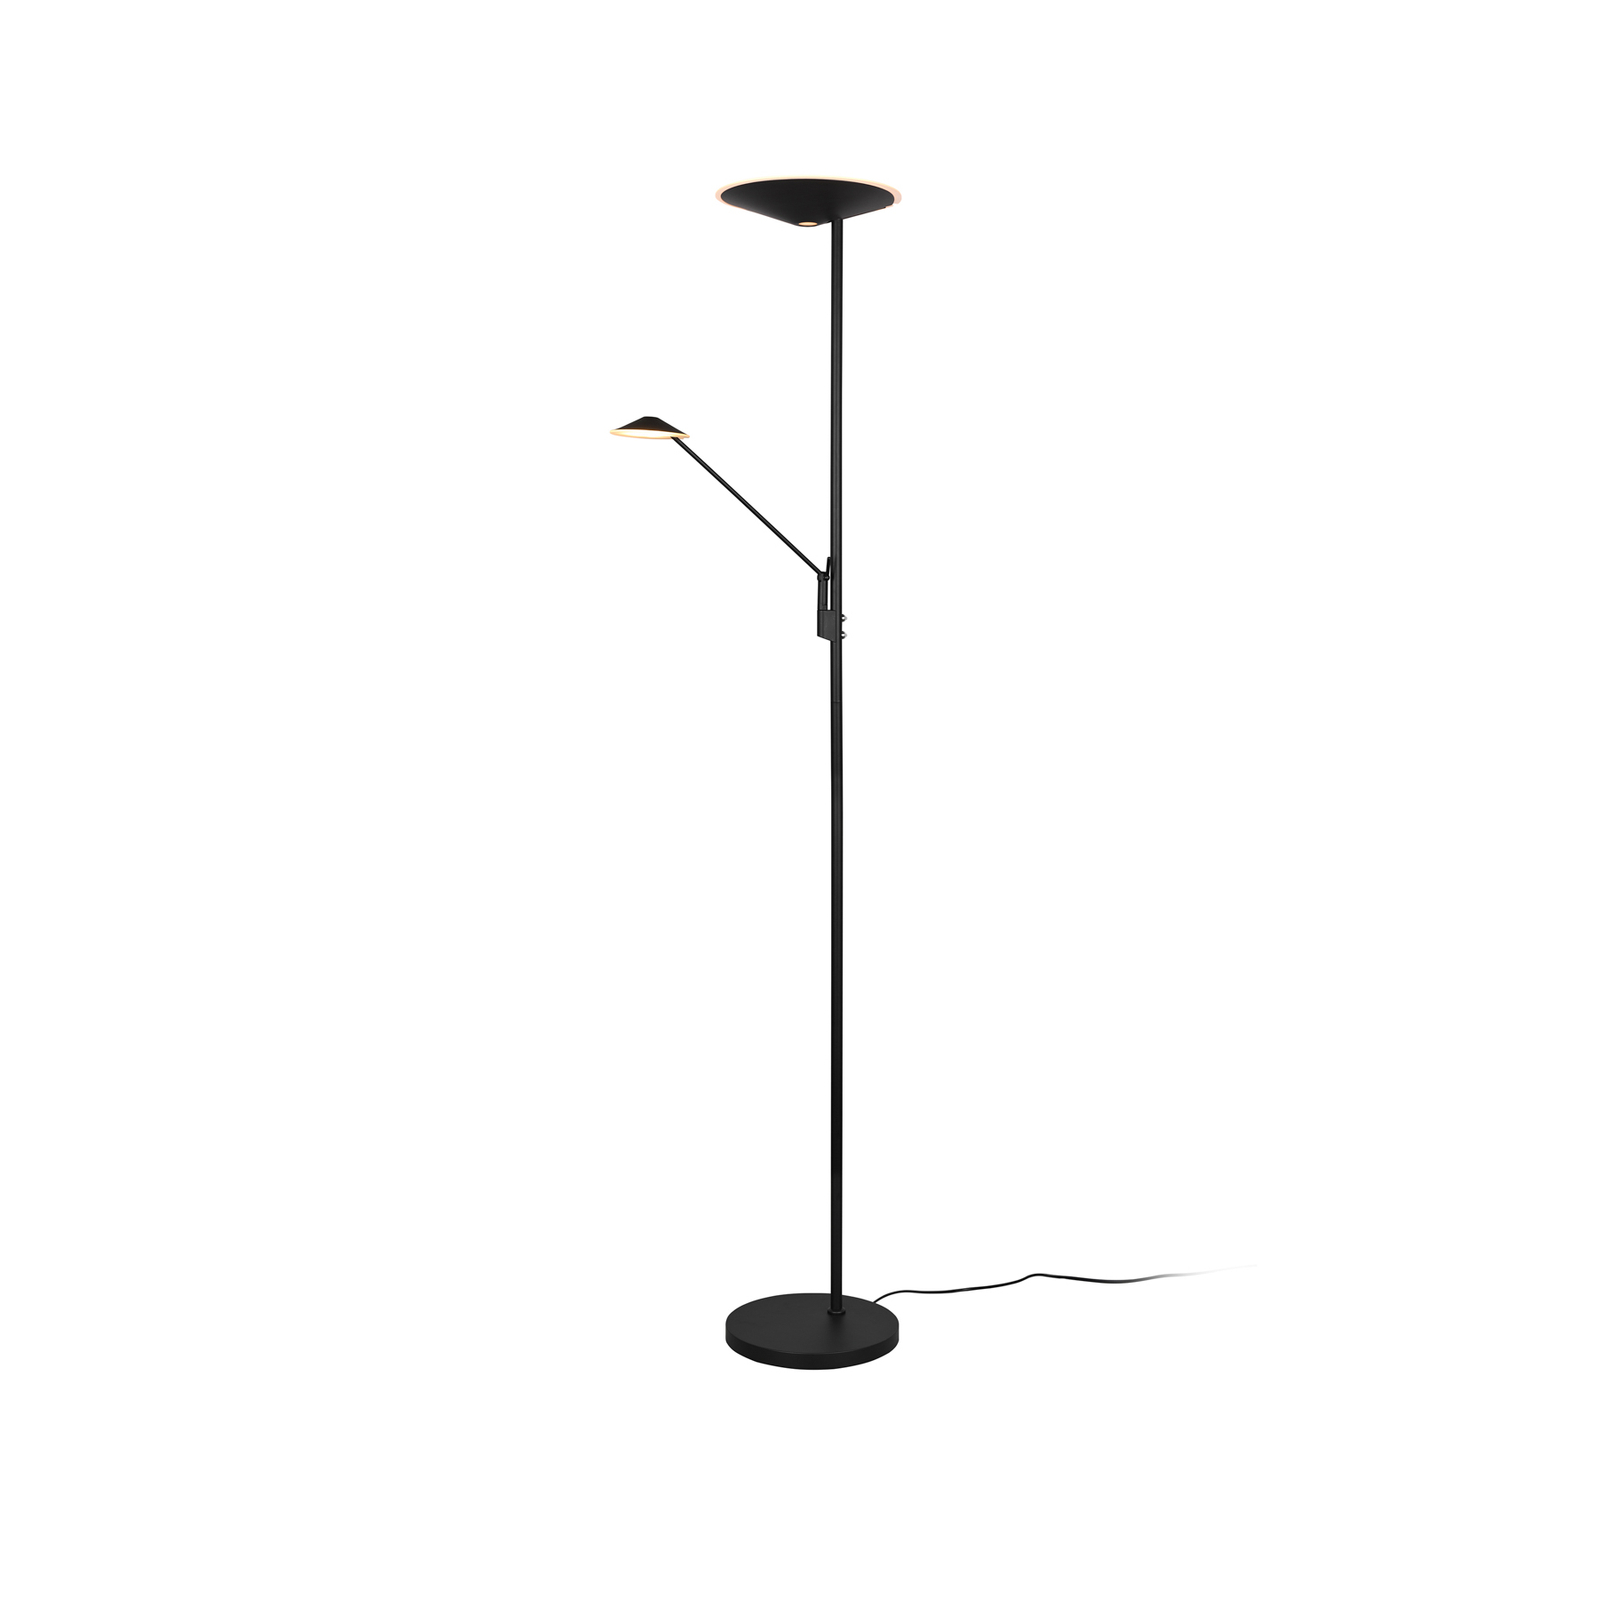 Brantford LED floor lamp reading lamp matt black